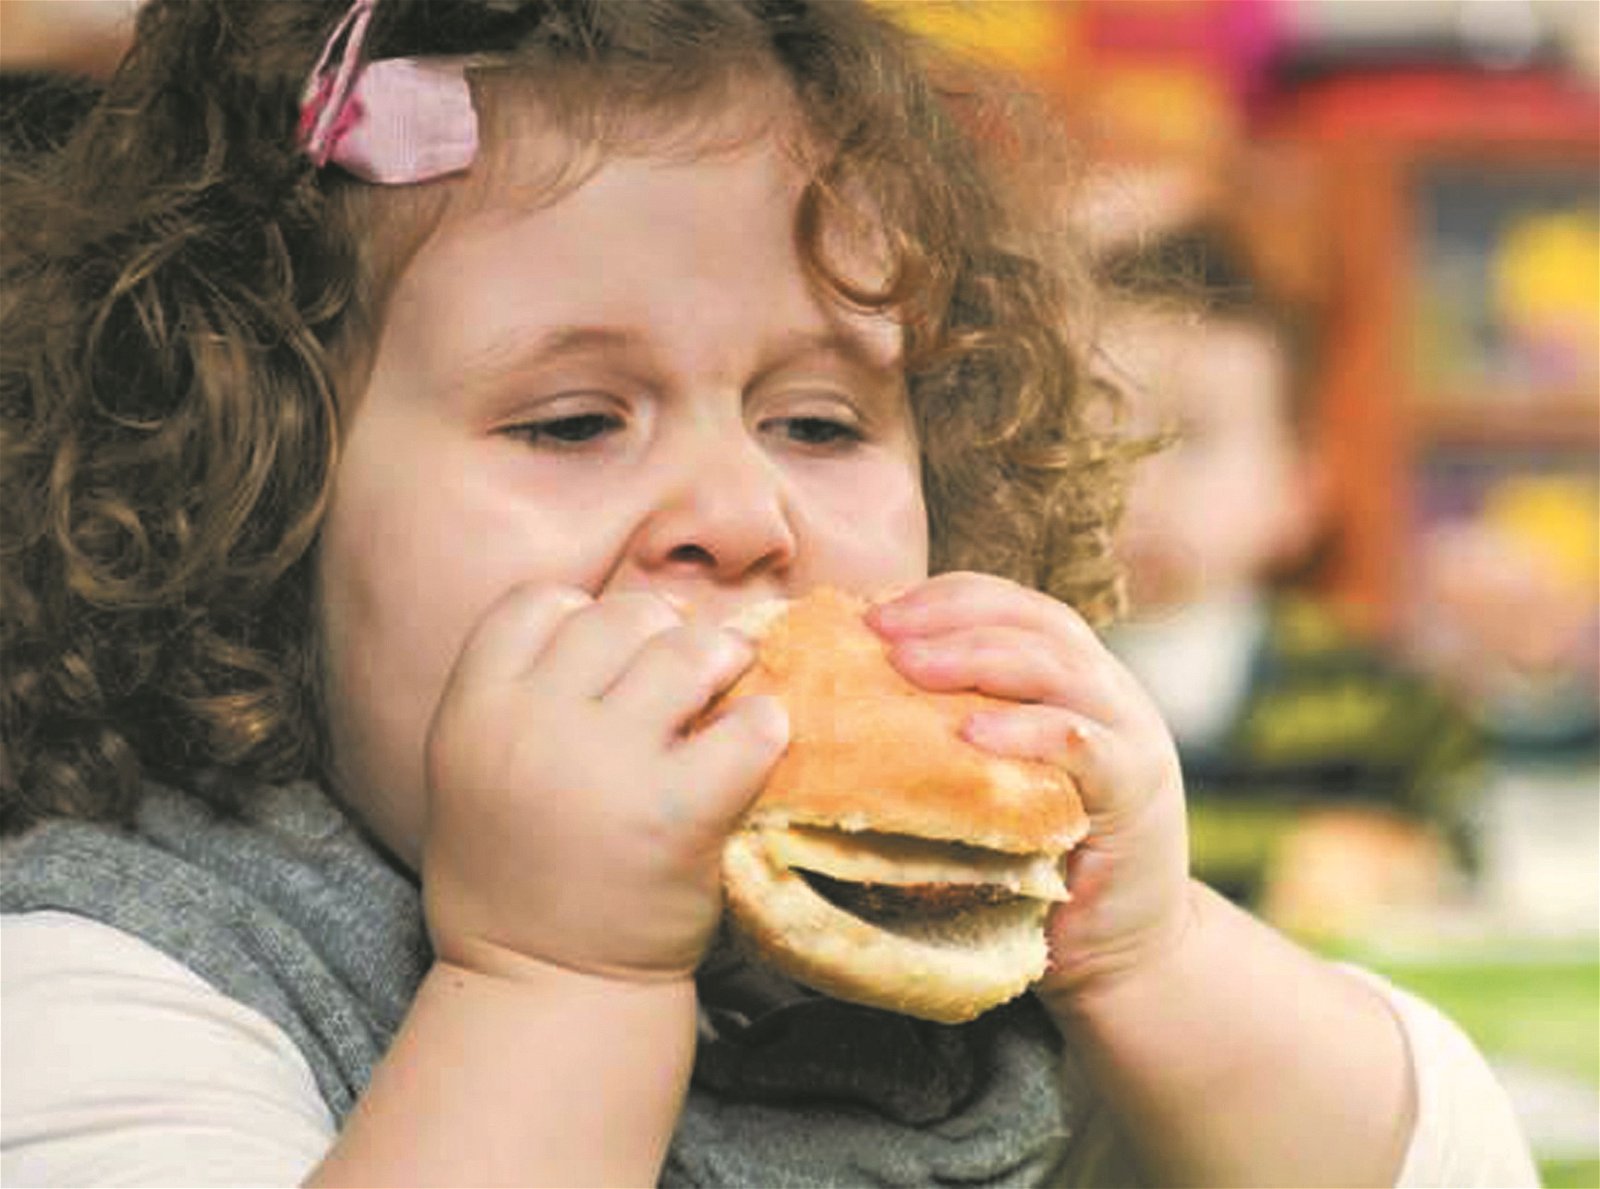 世卫报告对全球痴肥儿童人数敲响警钟，警告情况若不改善，到2022年全球儿童和青少年肥胖人数将超过中重度消瘦的人数。图为一名超重儿童大口吃著汉堡。